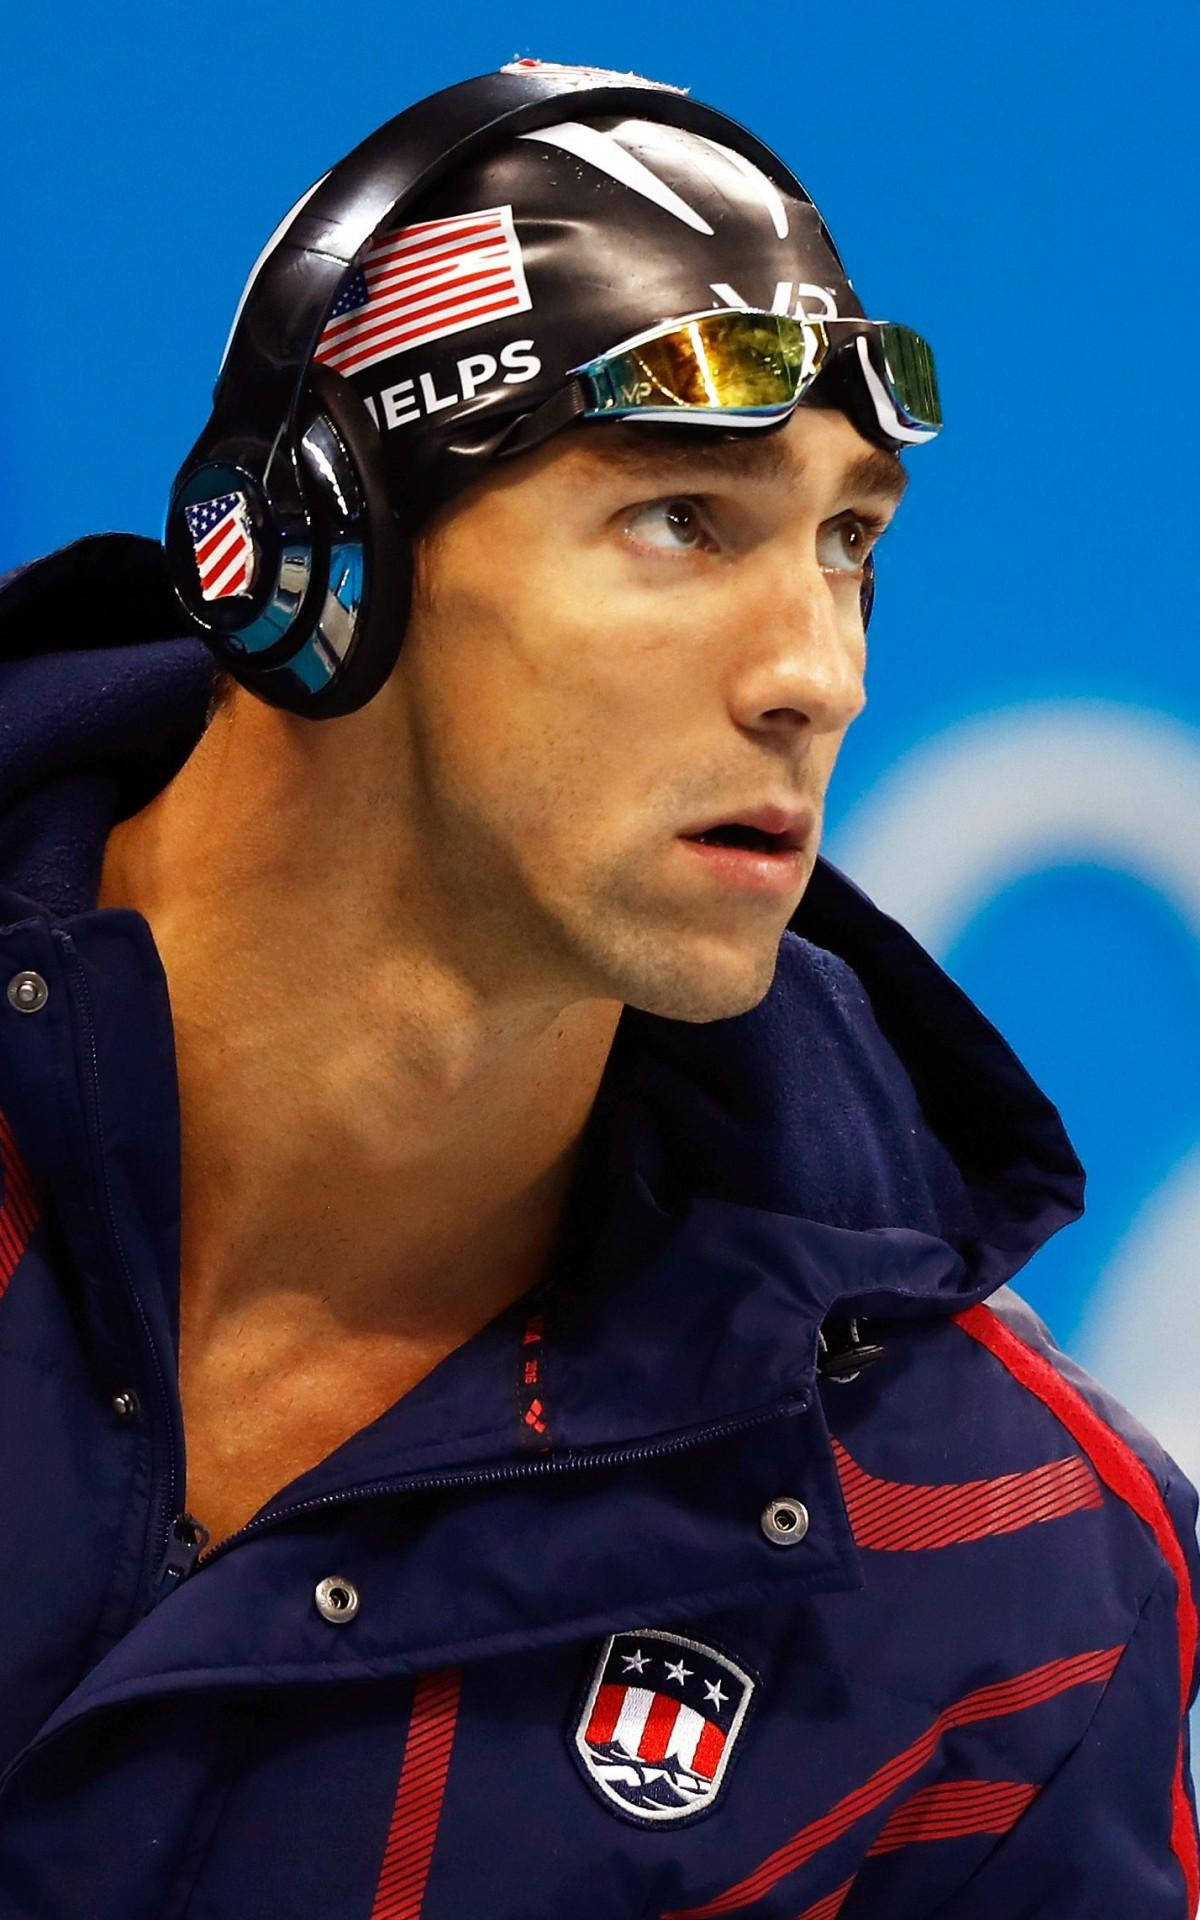 Michael Phelps Hovedtelefoner Wallpaper